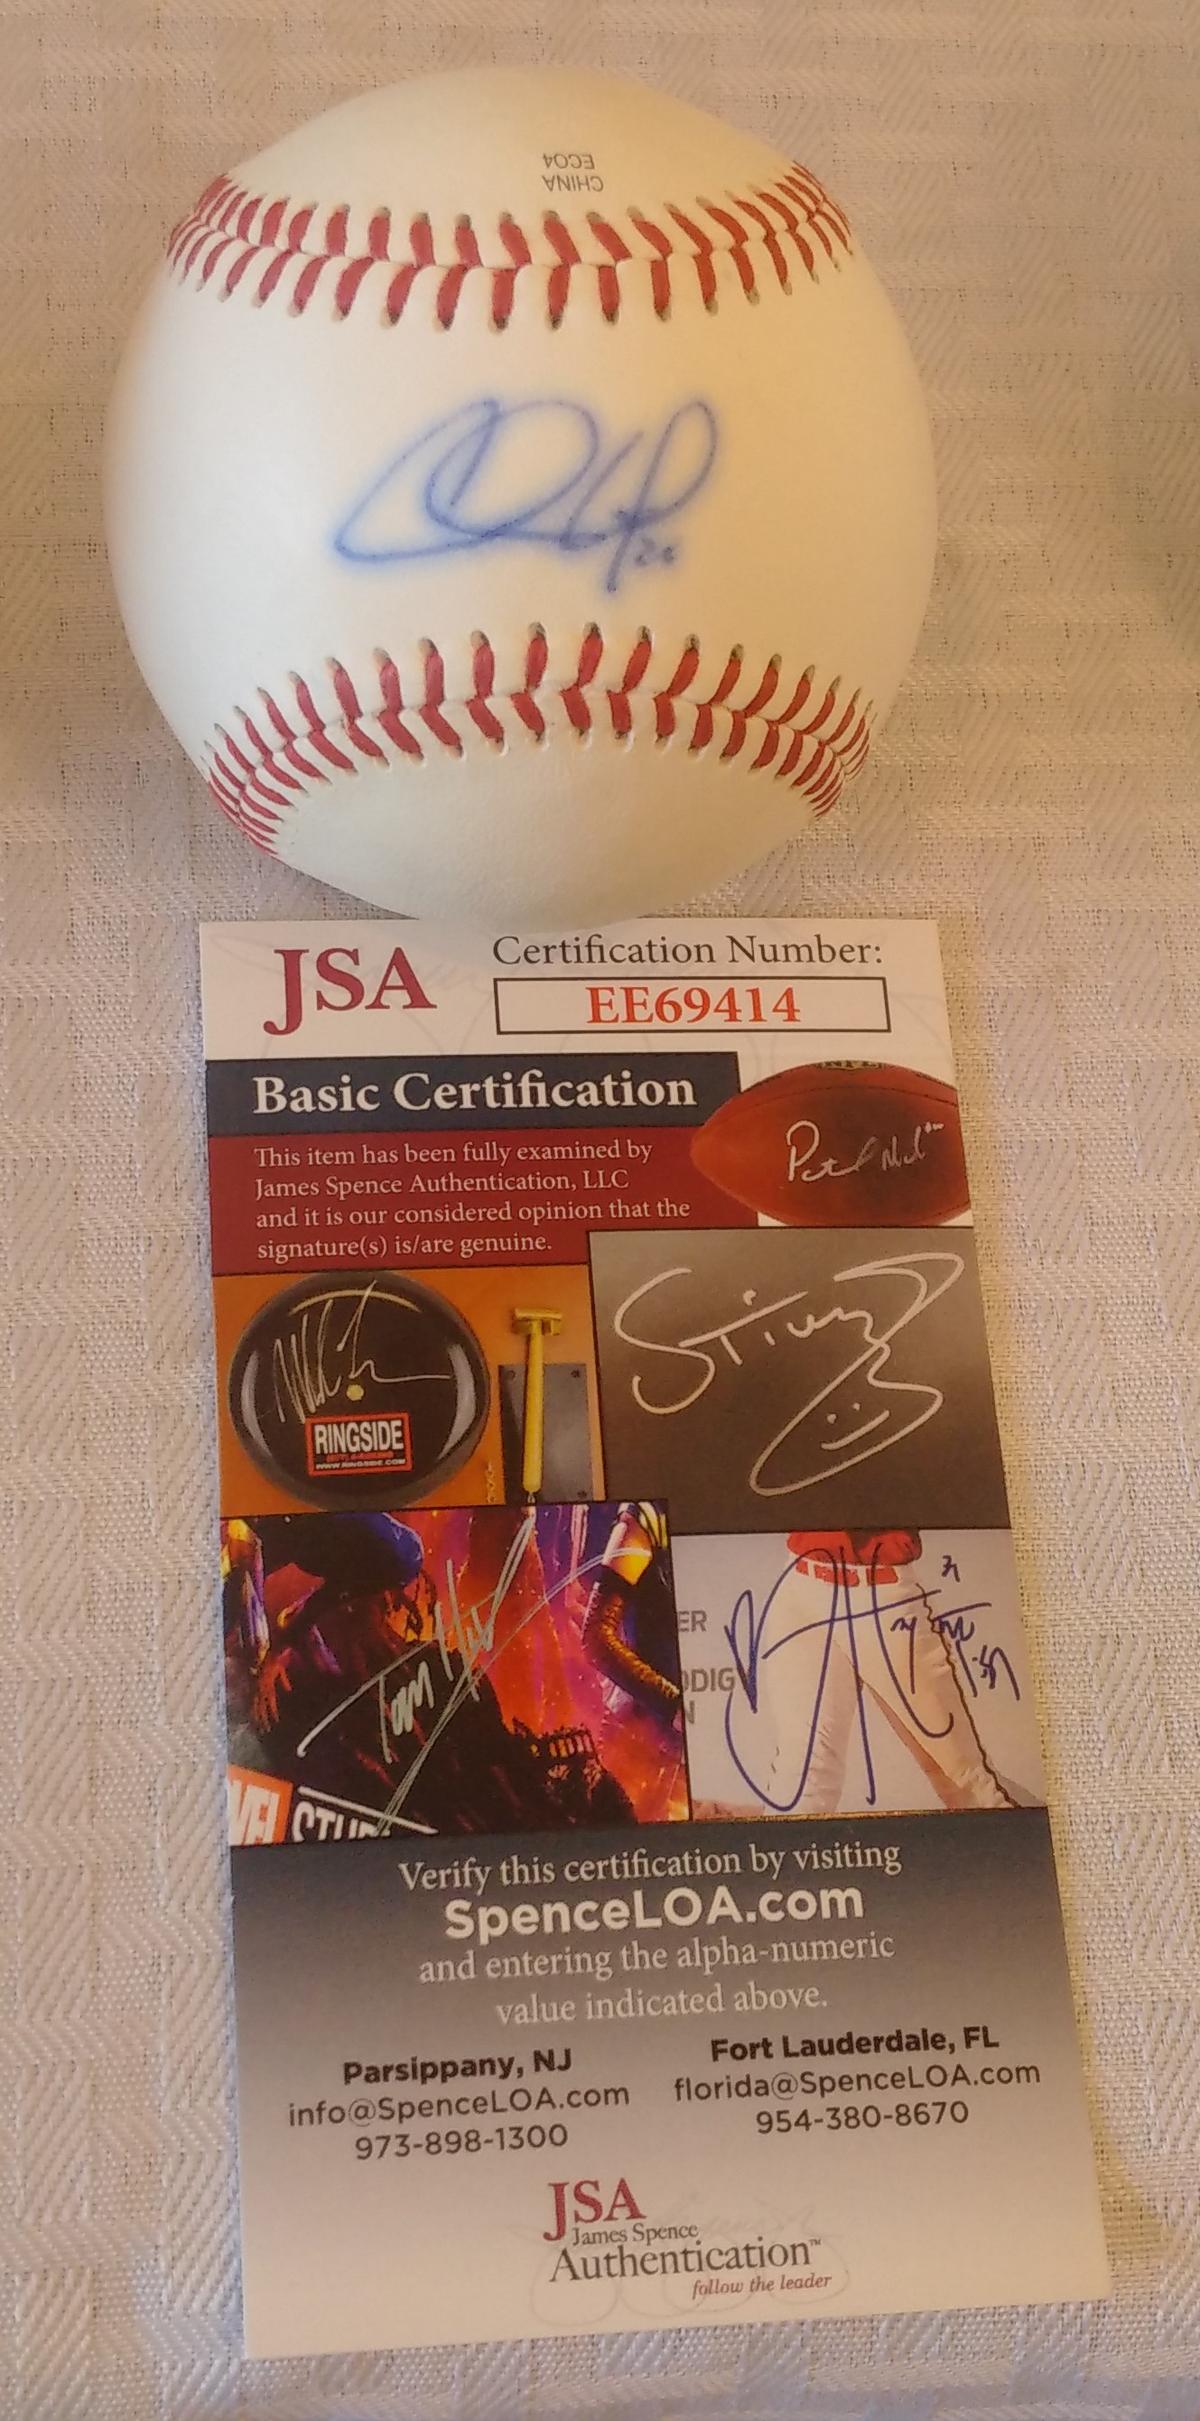 Chase Utley Autographed Baseball Rawlings Minor League Ball JSA COA Phillies Dodgers